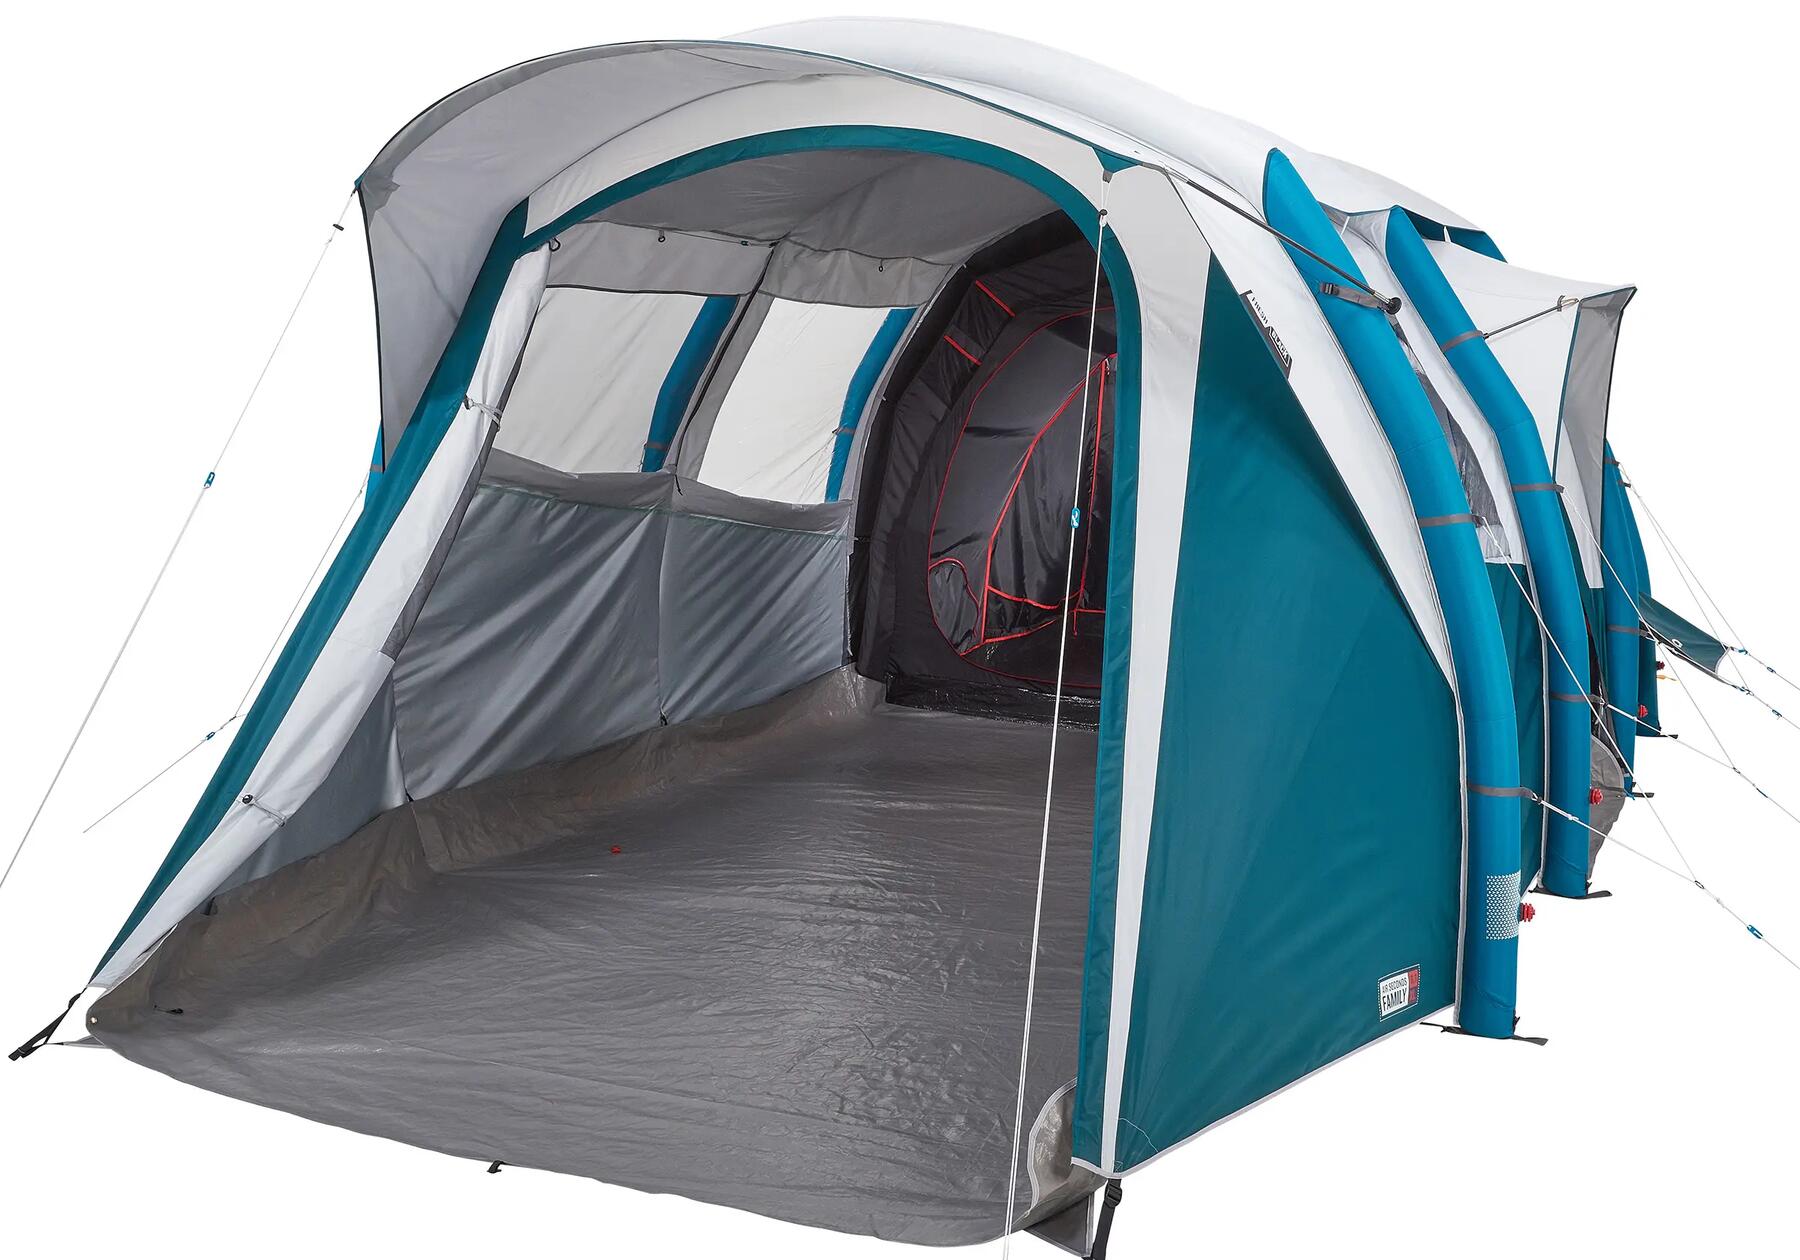 Lässt sich ein Zelt flicken?